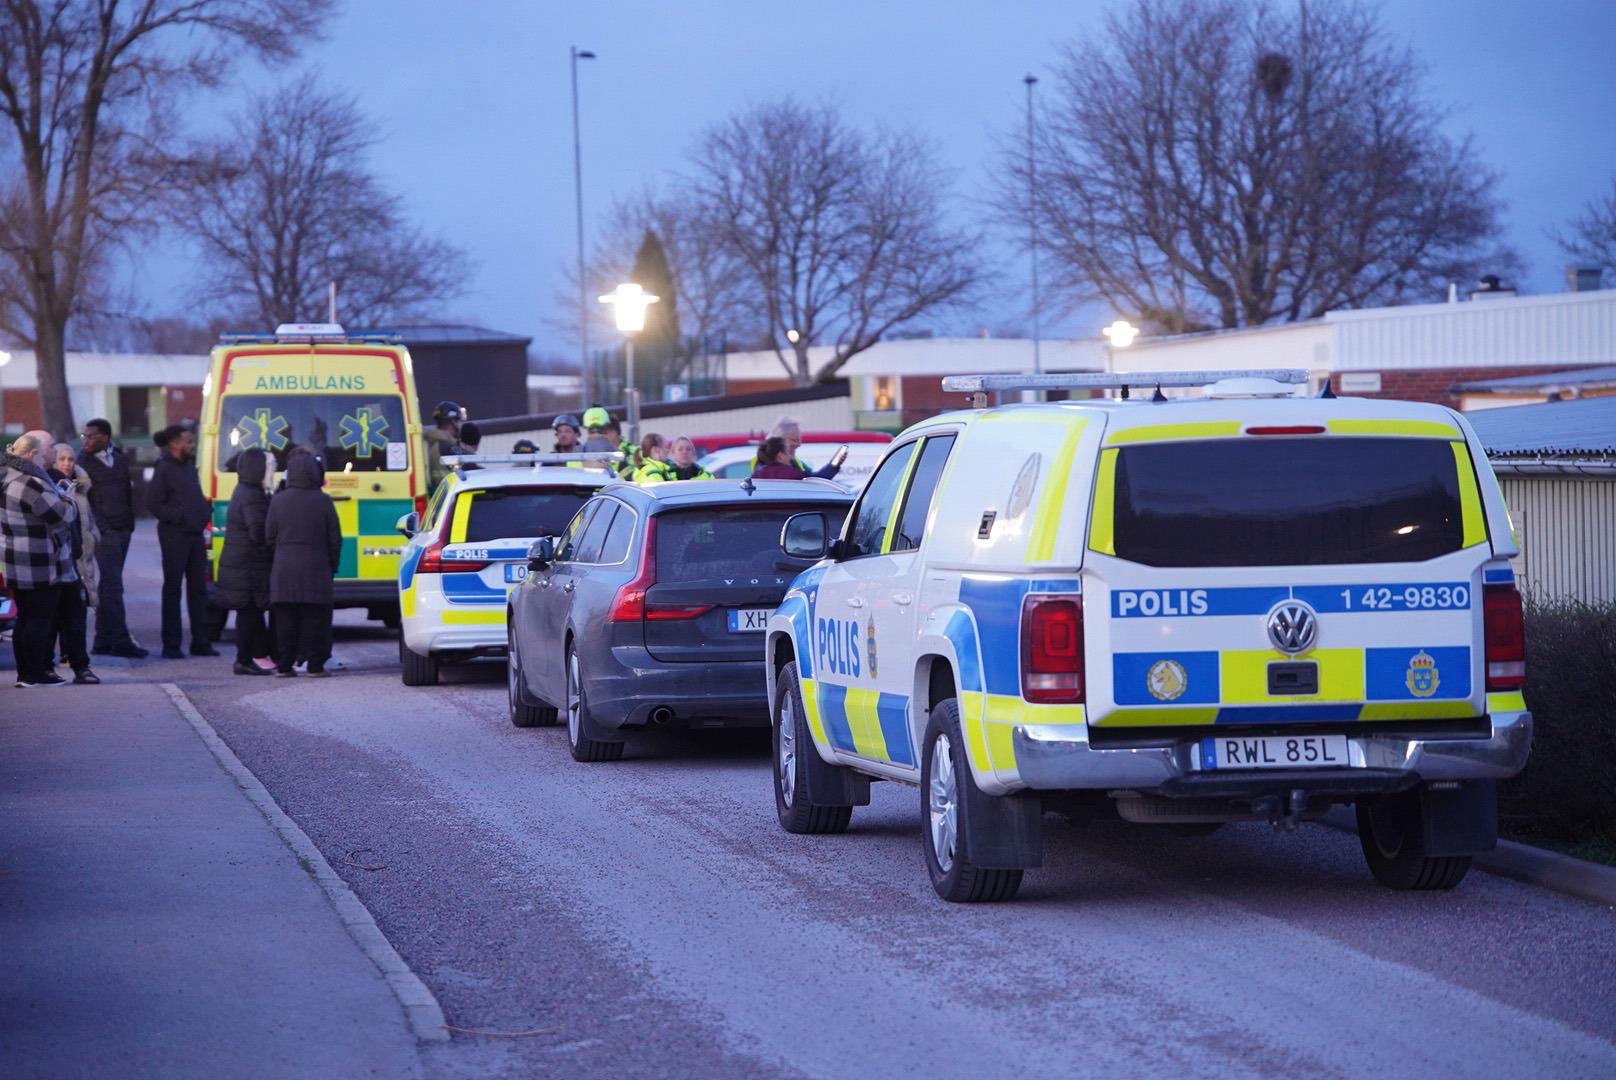 Polis och ambulans på plats sedan en 16-årig pojke hittats skjuten i Norrköping. Arkivbild. Foto: Niklas Luks/TT